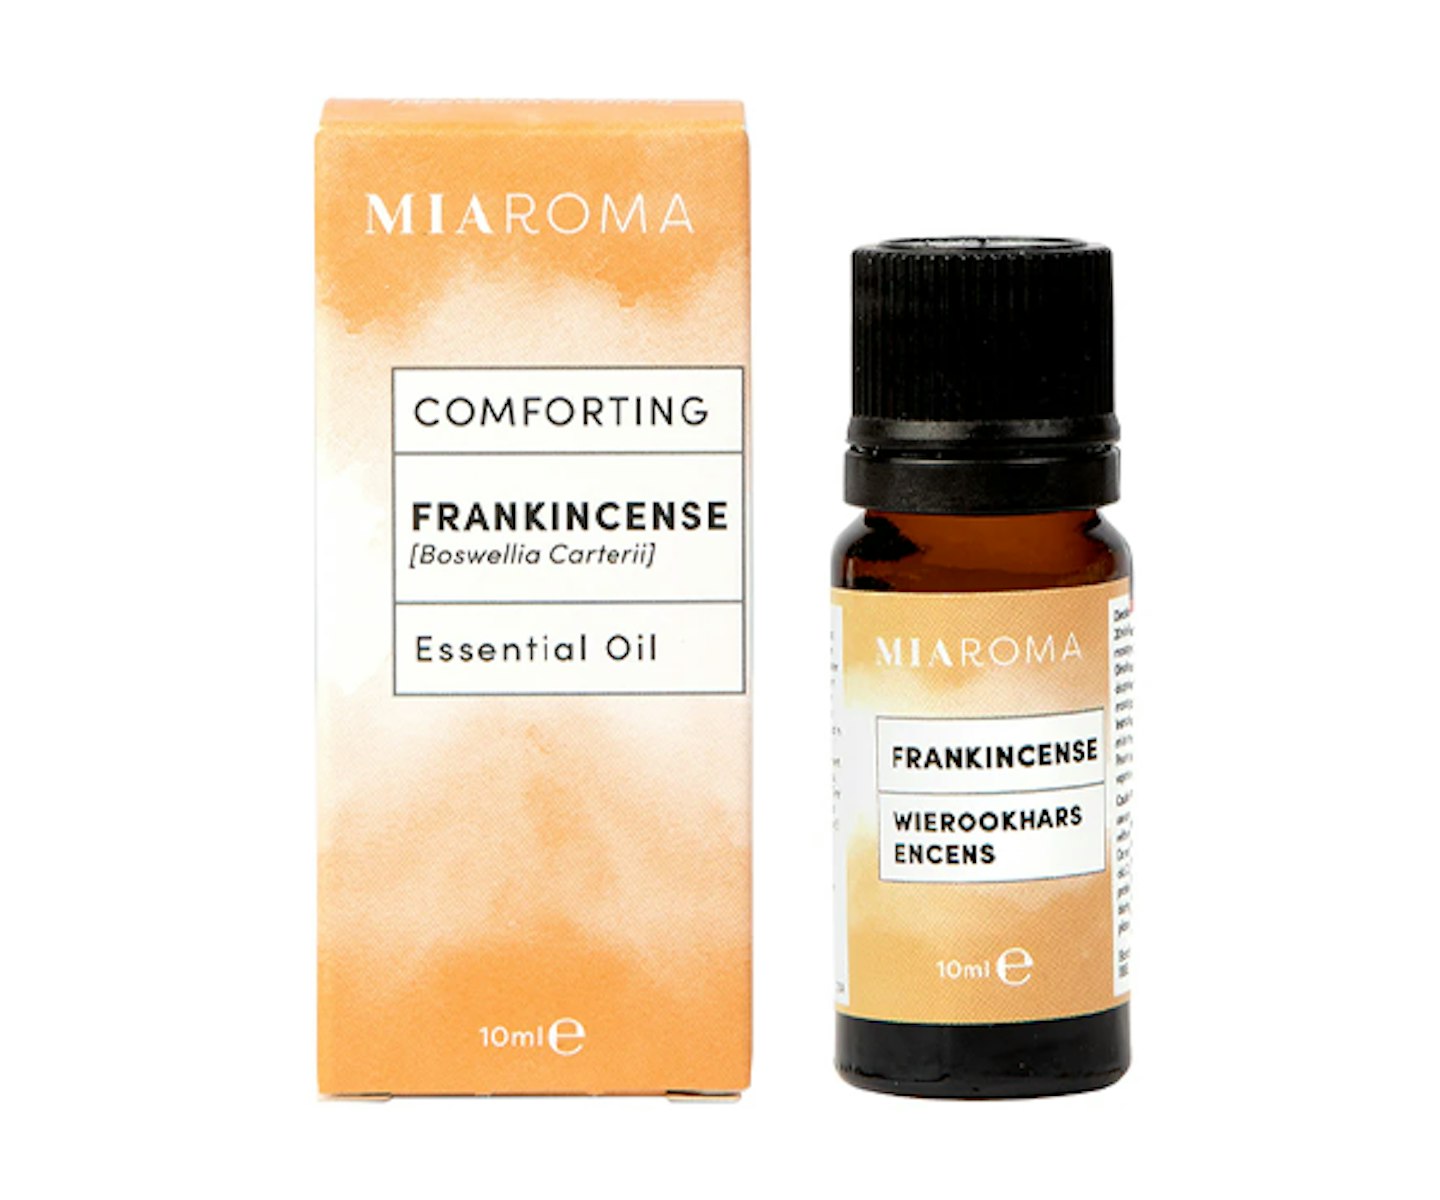 Miaroma Frankincense Pure Essential Oil 10ml